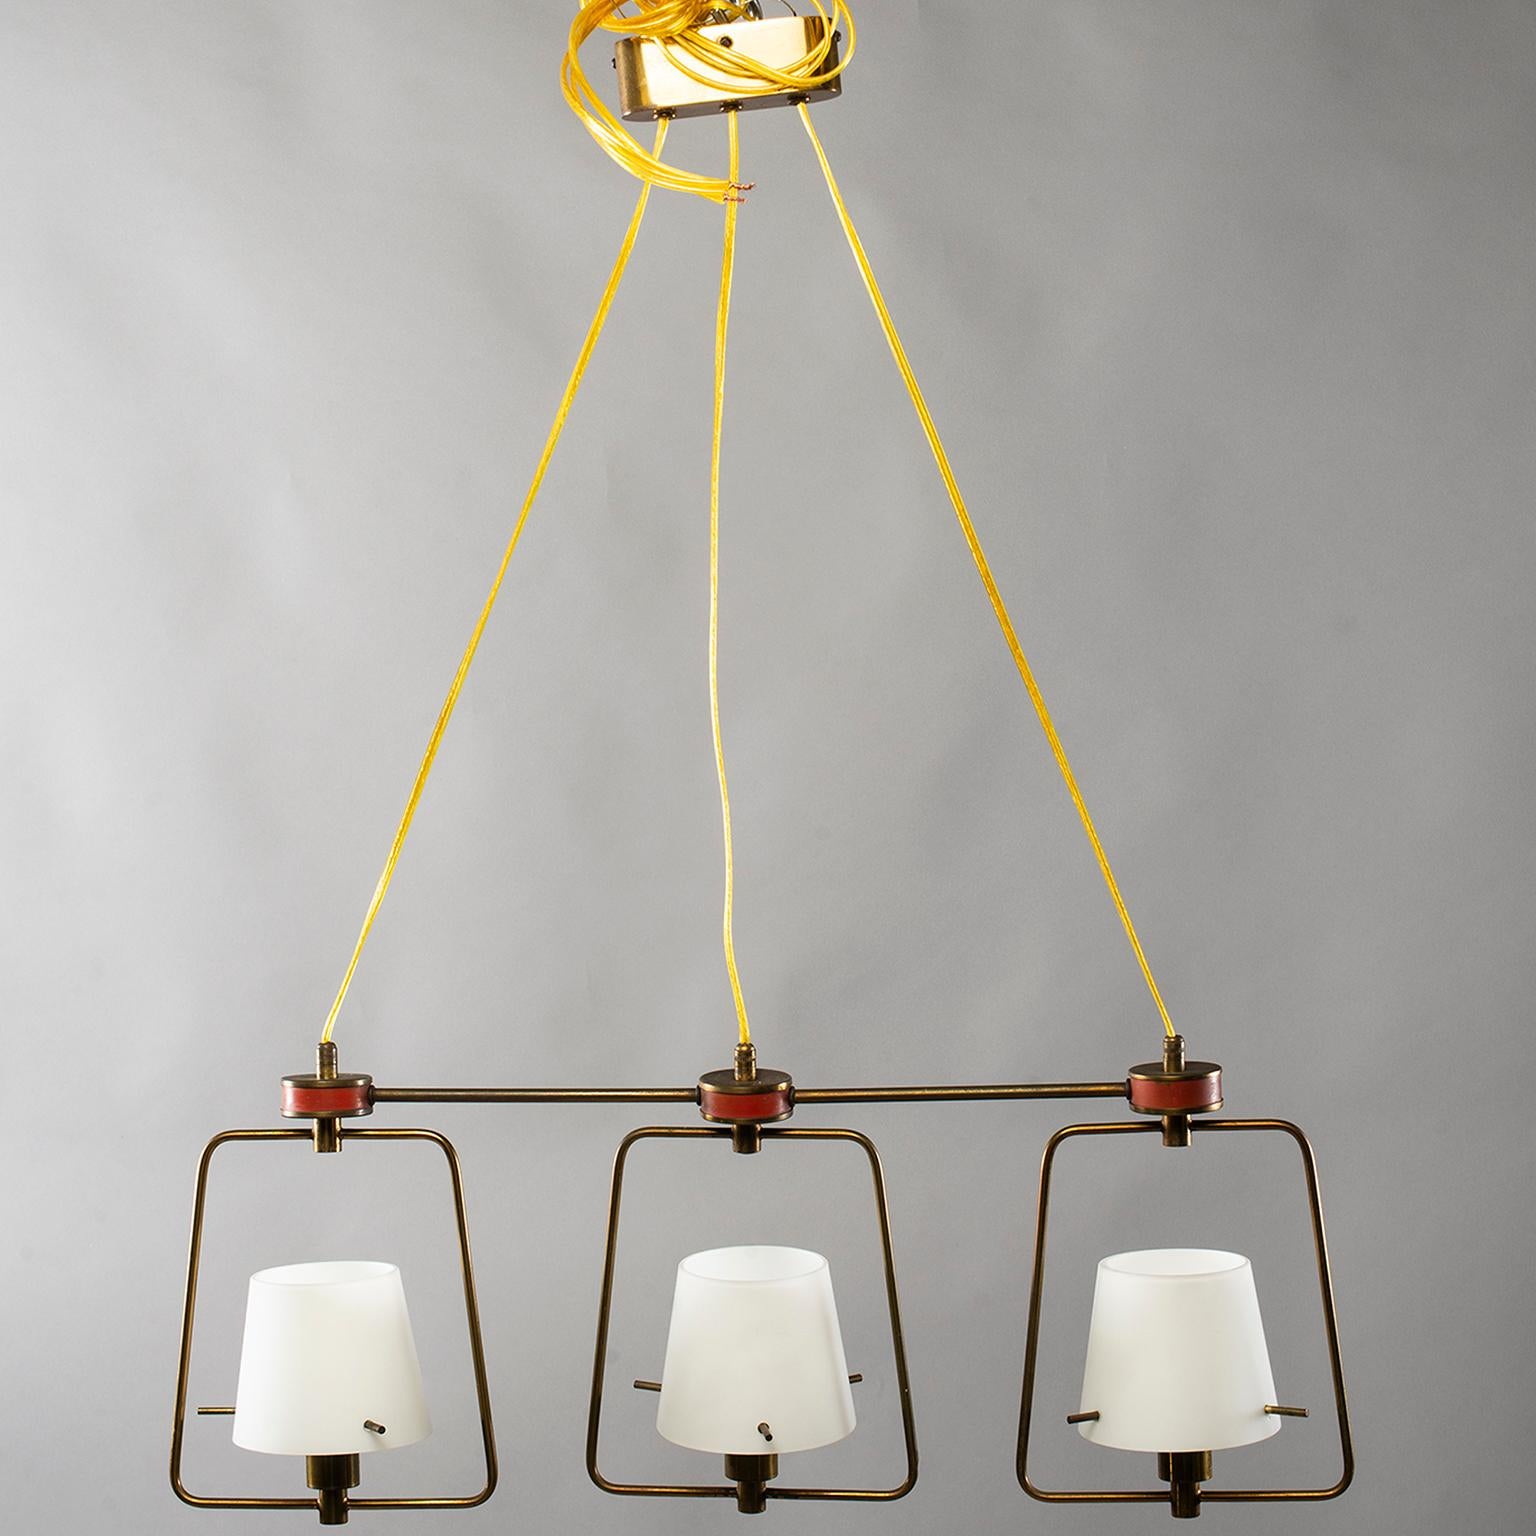 Italienische Leuchte im Stil von Stilnovo mit drei Leuchten, um 1960. Das Gestell aus Messingrohr hat rote Emaille-Akzente und ist mit längenverstellbaren elektrischen Schnüren und drei Glasschirmen mit Kandelaberfassungen ausgestattet. Die